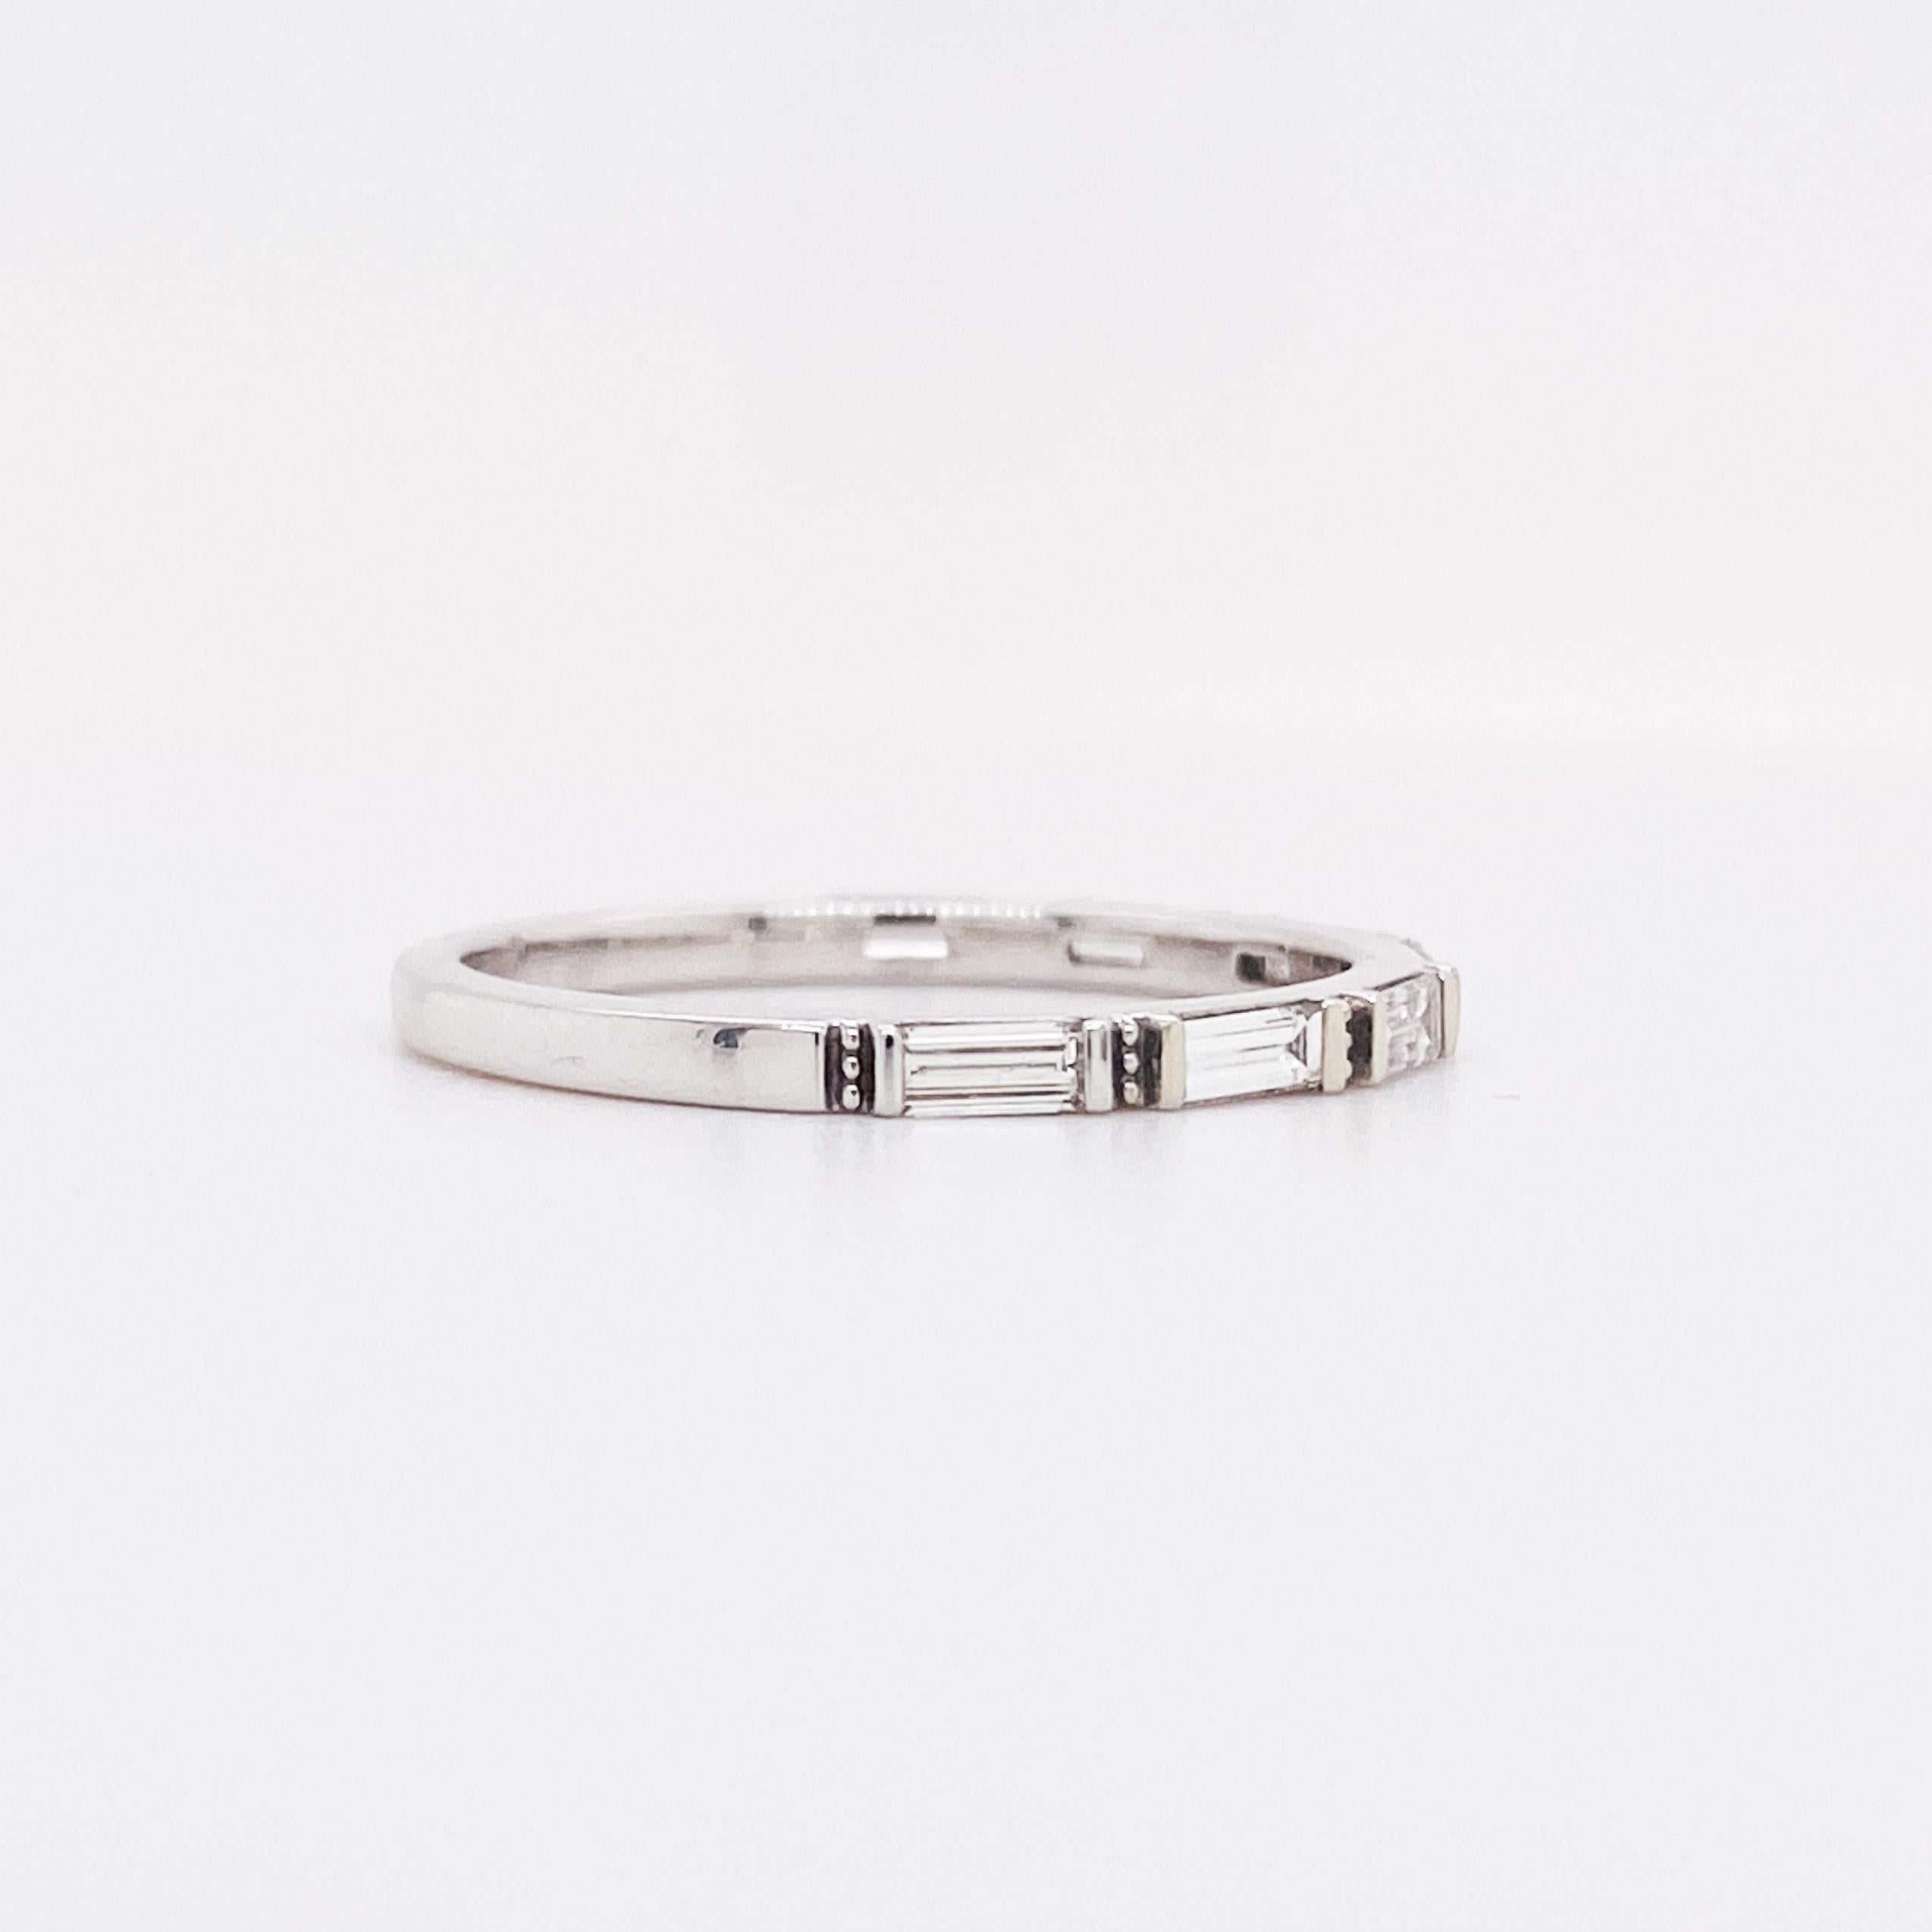 Dieses schlanke Baguette-Diamantband ist mit seinen glatten, flachen Seiten perfekt geeignet, um sich mit Ihrem Ring zu stapeln. Die klaren Linien der horizontalen Reihe von sieben Baguettes werden zwischen jedem Stein durch eine vertikale Reihe von